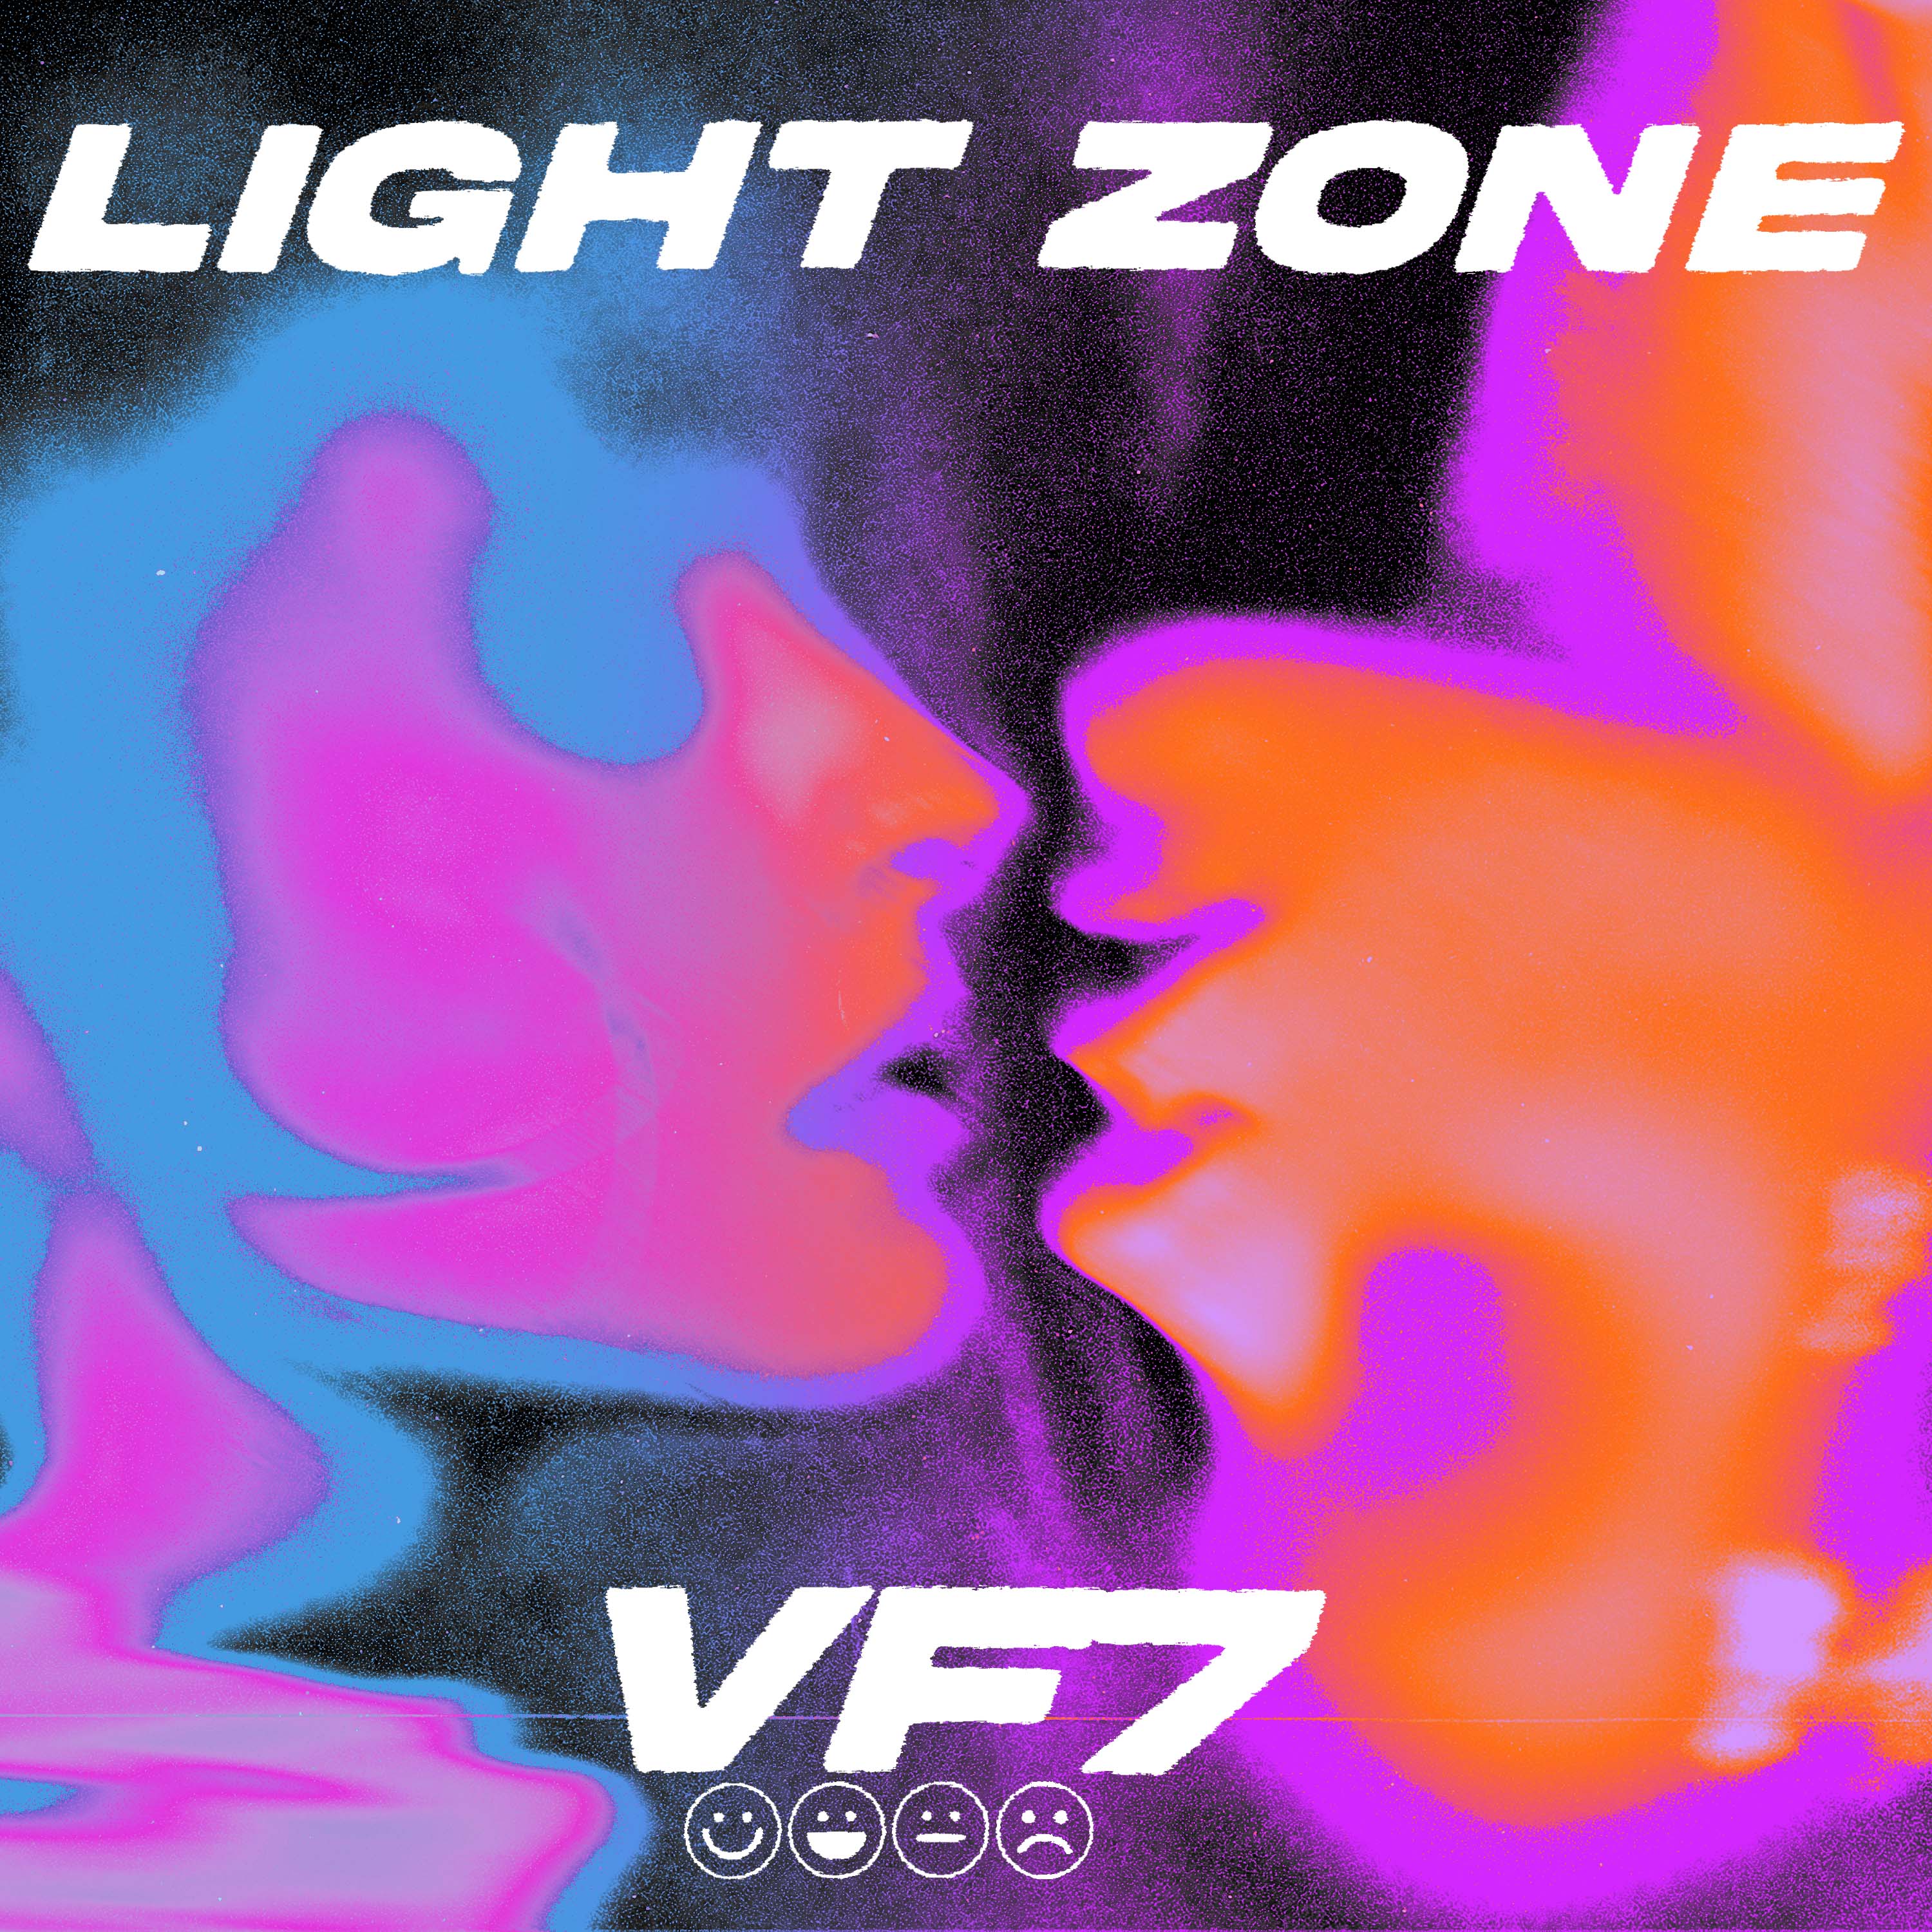 VF7 derriba fronteras musicales y estrena su primer reggae “Light zone”